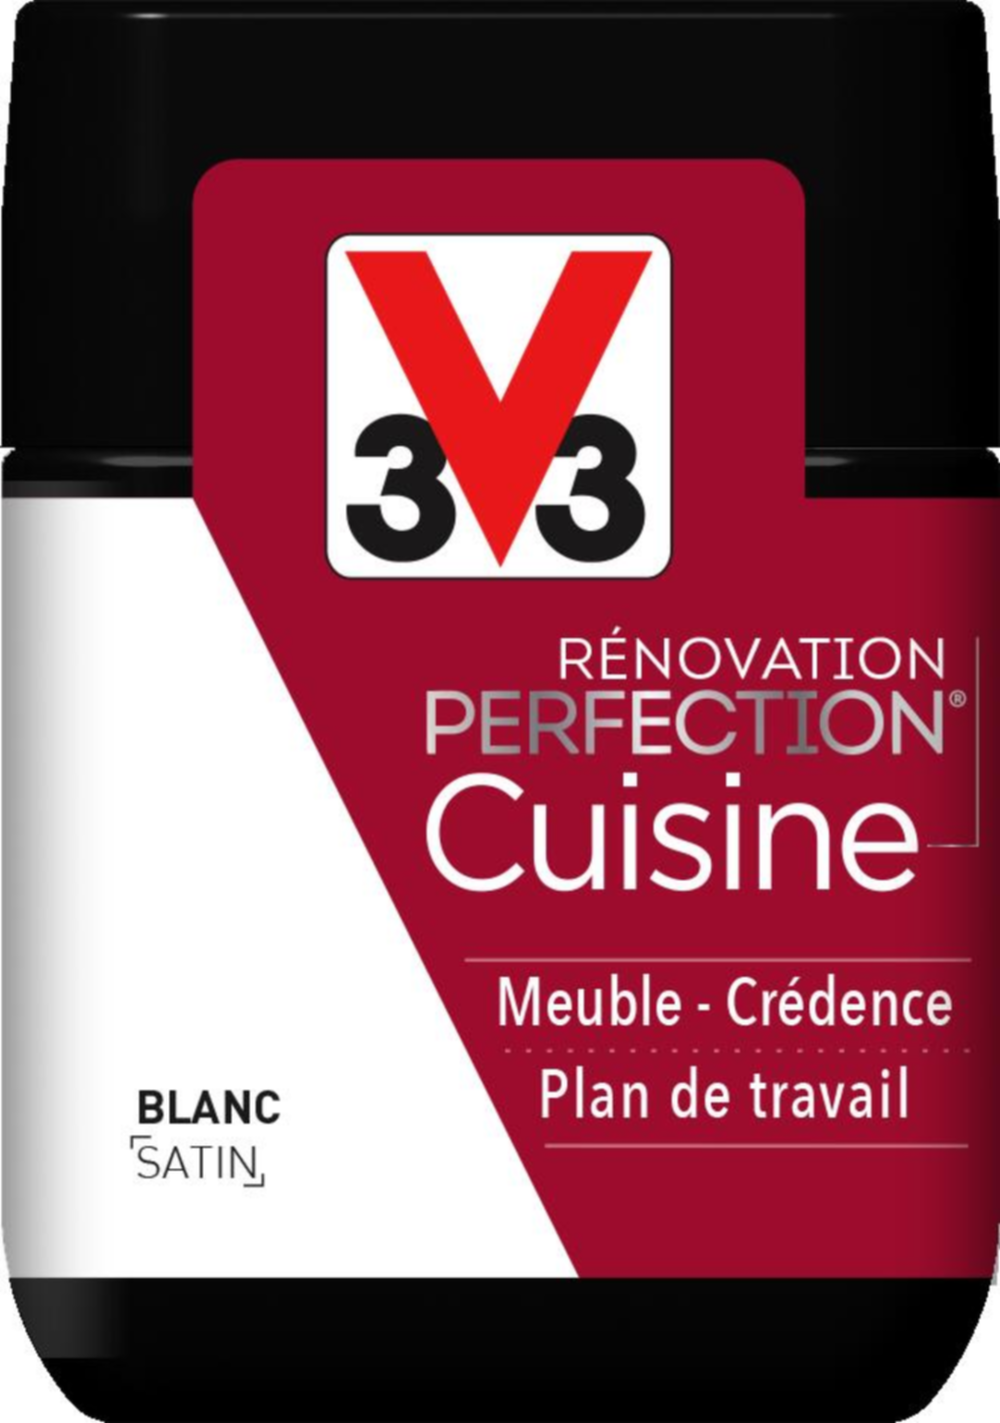 Peinture rénovation cuisine Perfection blanc satin testeur 75ml - V33